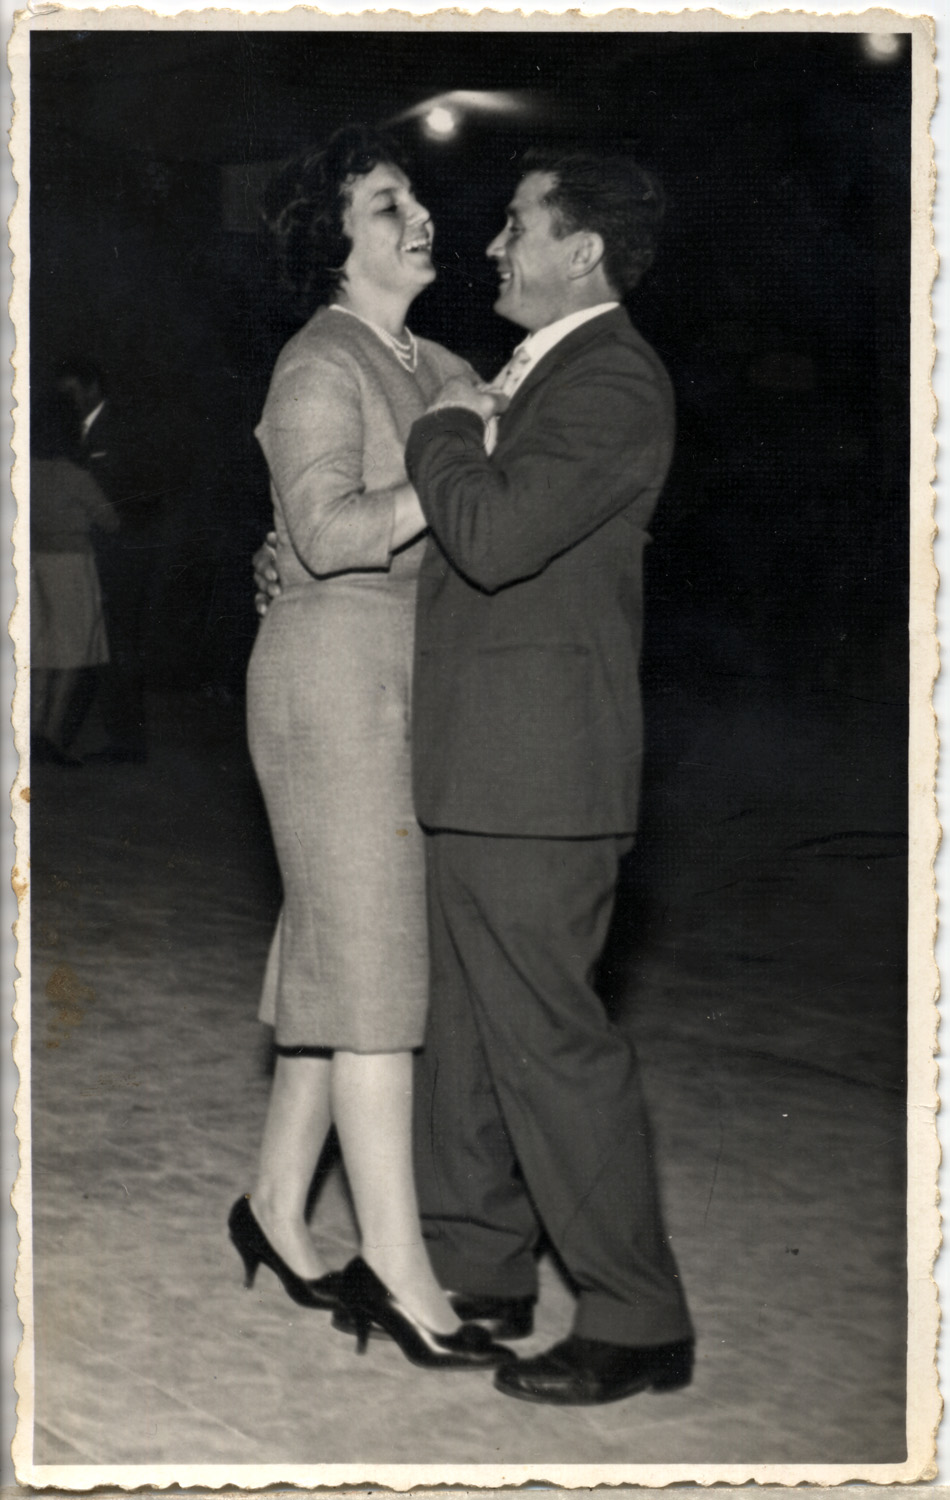 Mis padres bailando